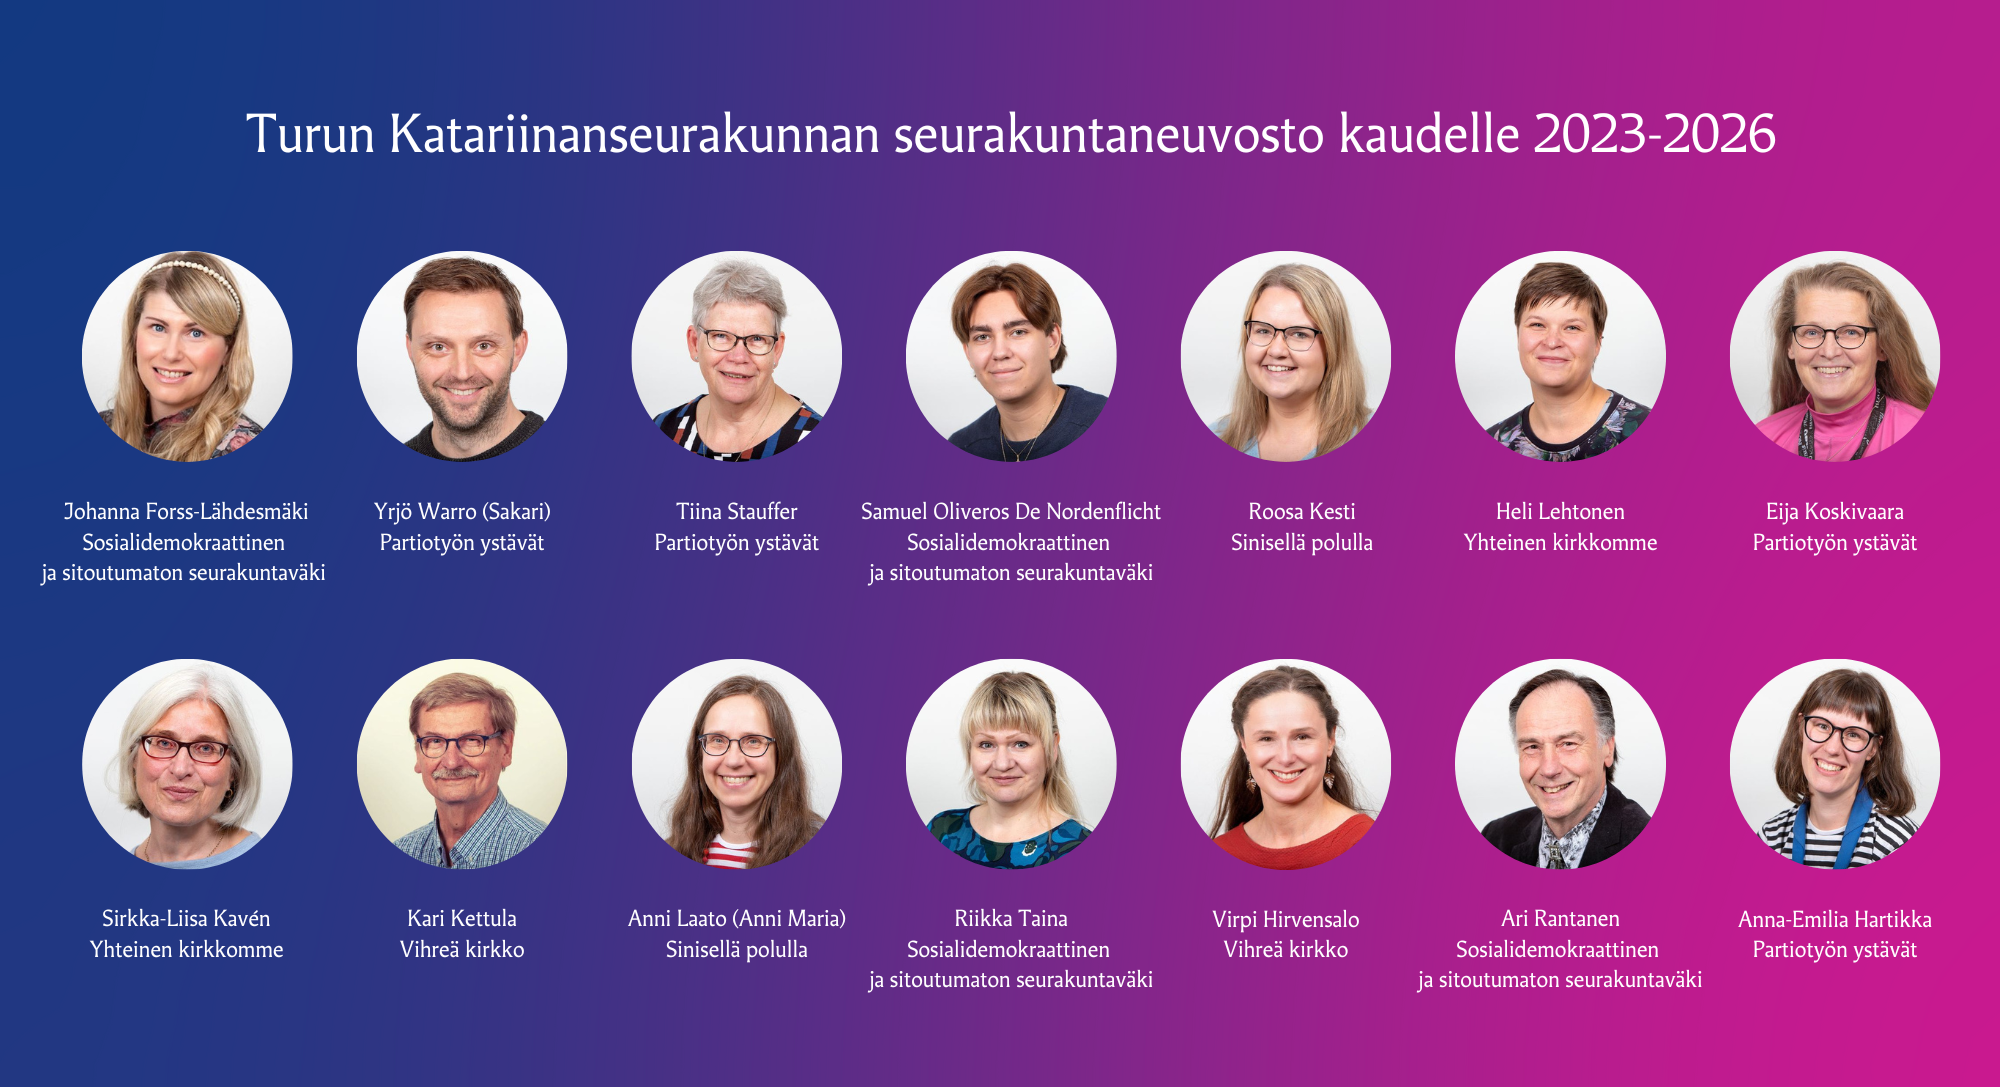 Turun Katariinanseurakunnan uusien luottamushenkilöiden kuvat ja nimet, joita 14 kpl.